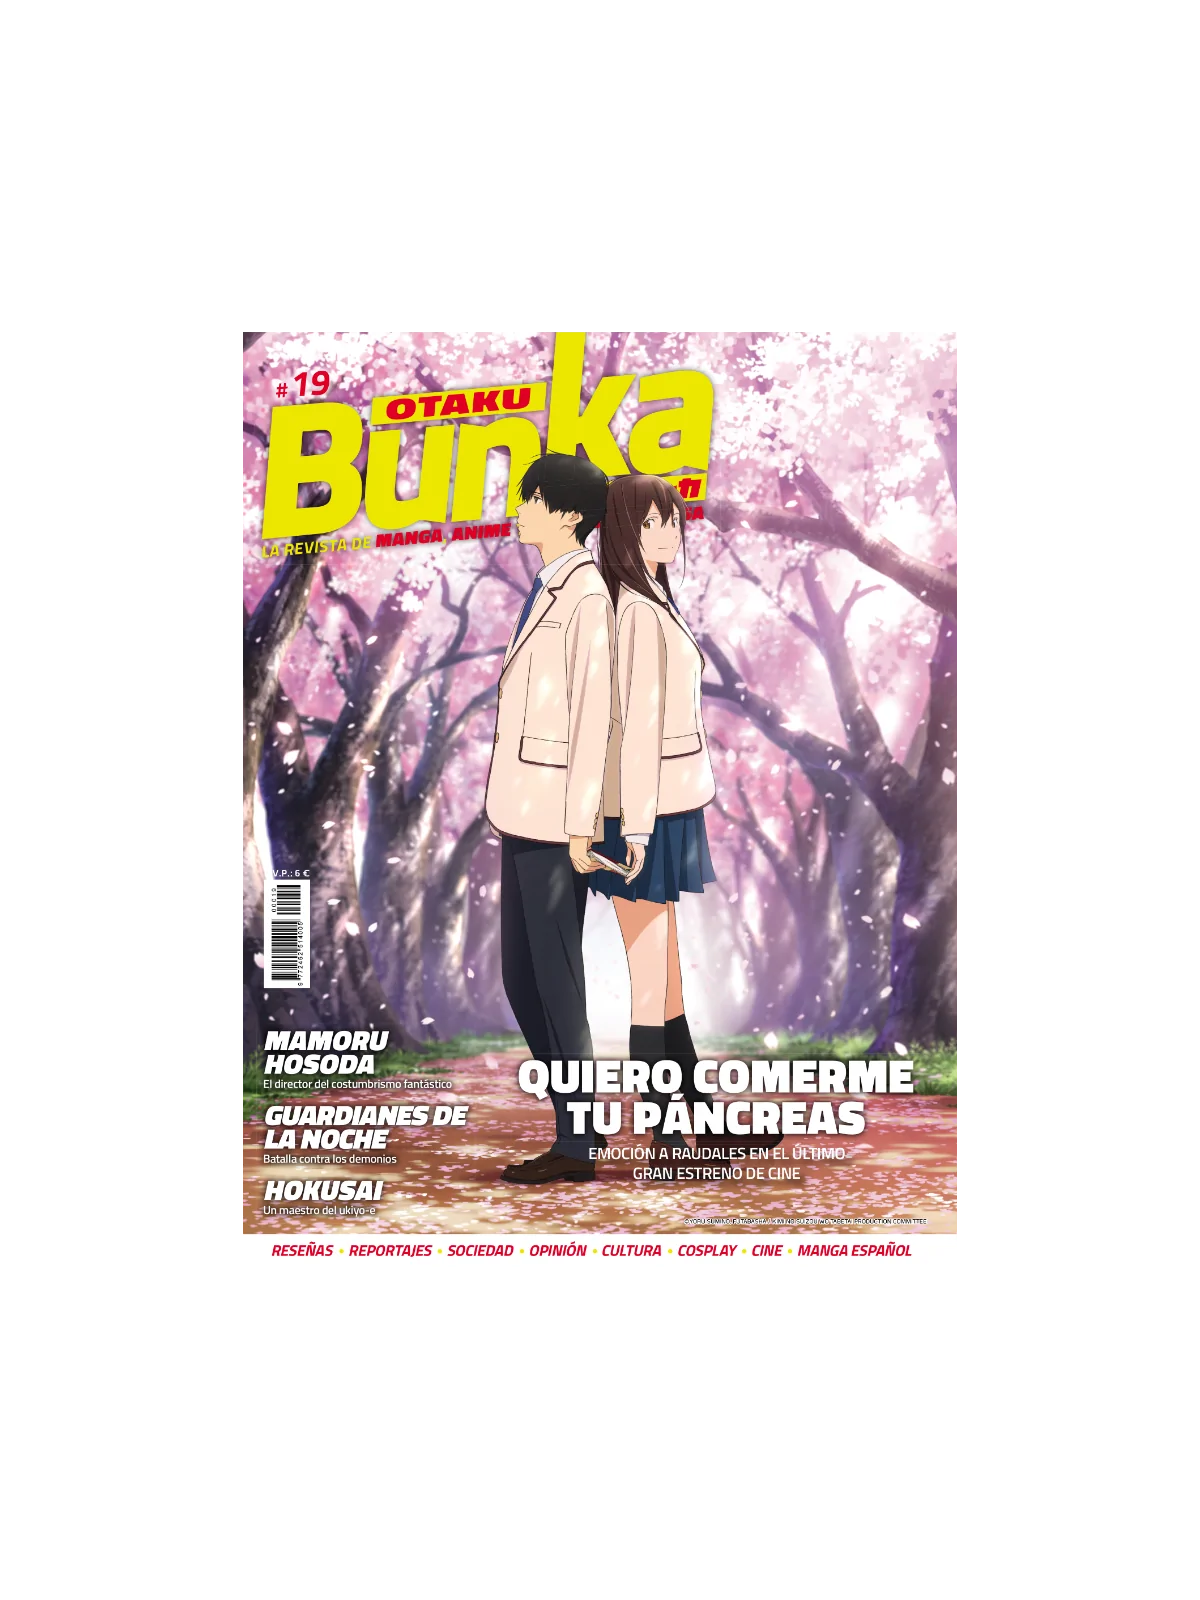 Comprar Otaku Bunka 19 barato al mejor precio 5,70 € de Panini Comics